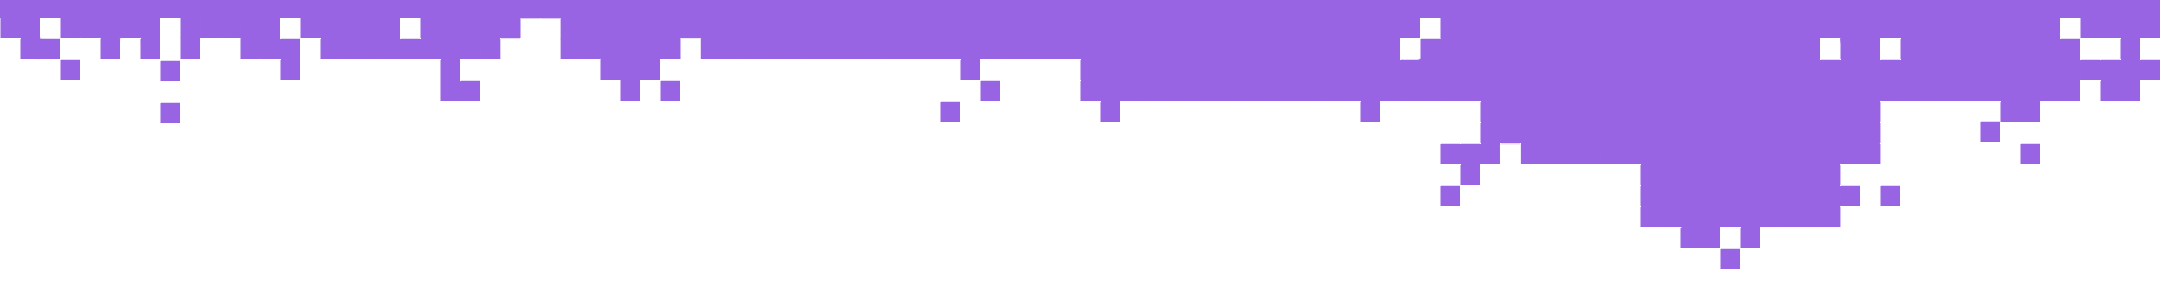 Pixel breakdown purple thin